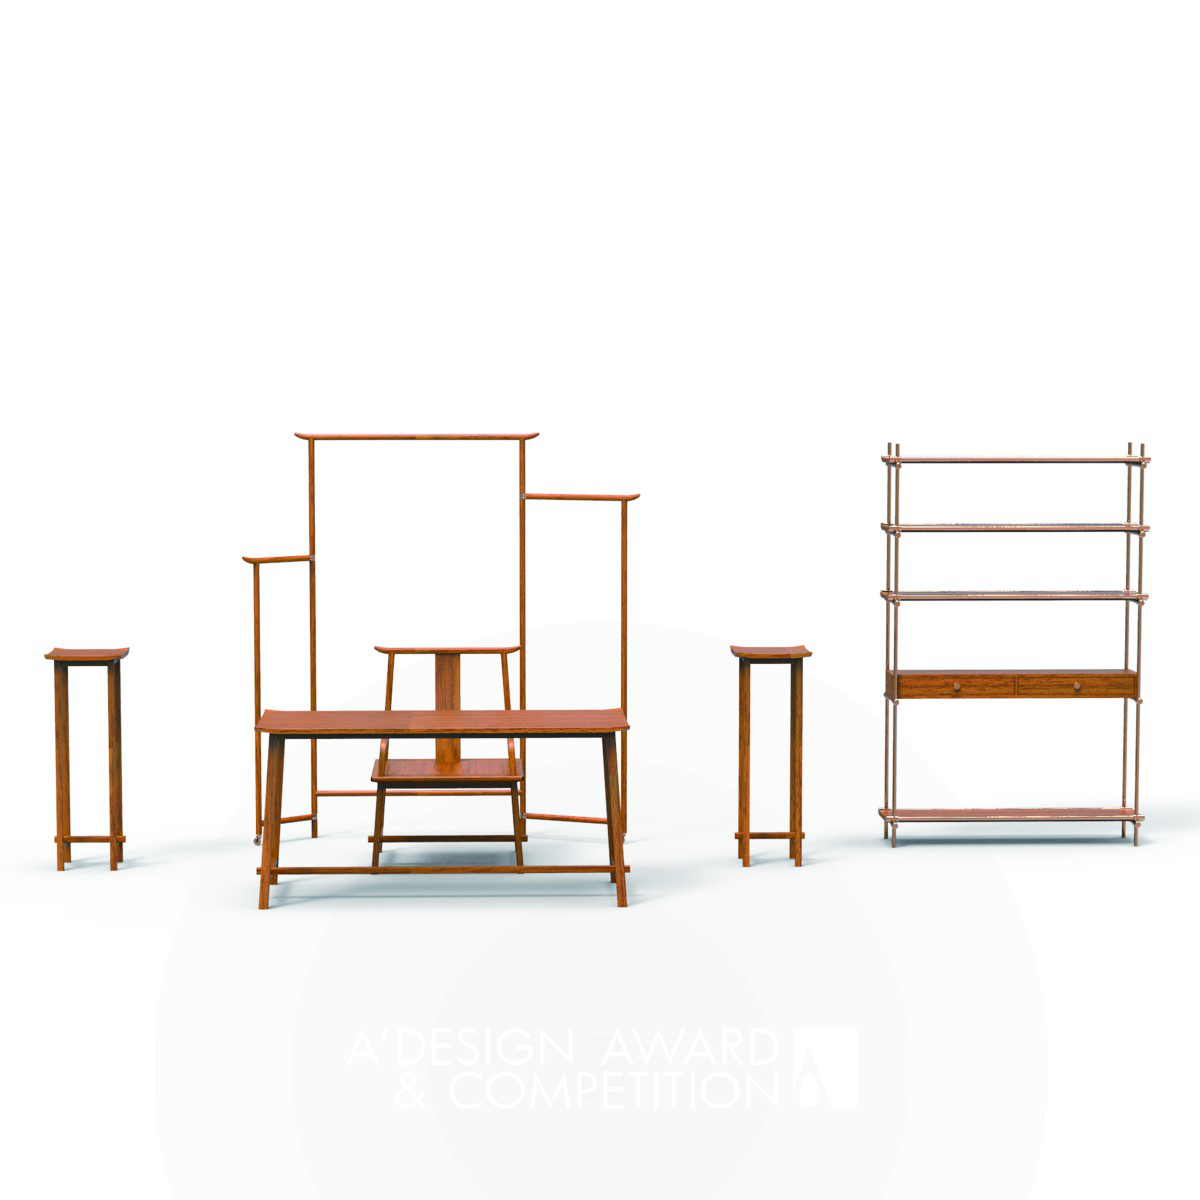 Yang Furniture by Zhao Guojian